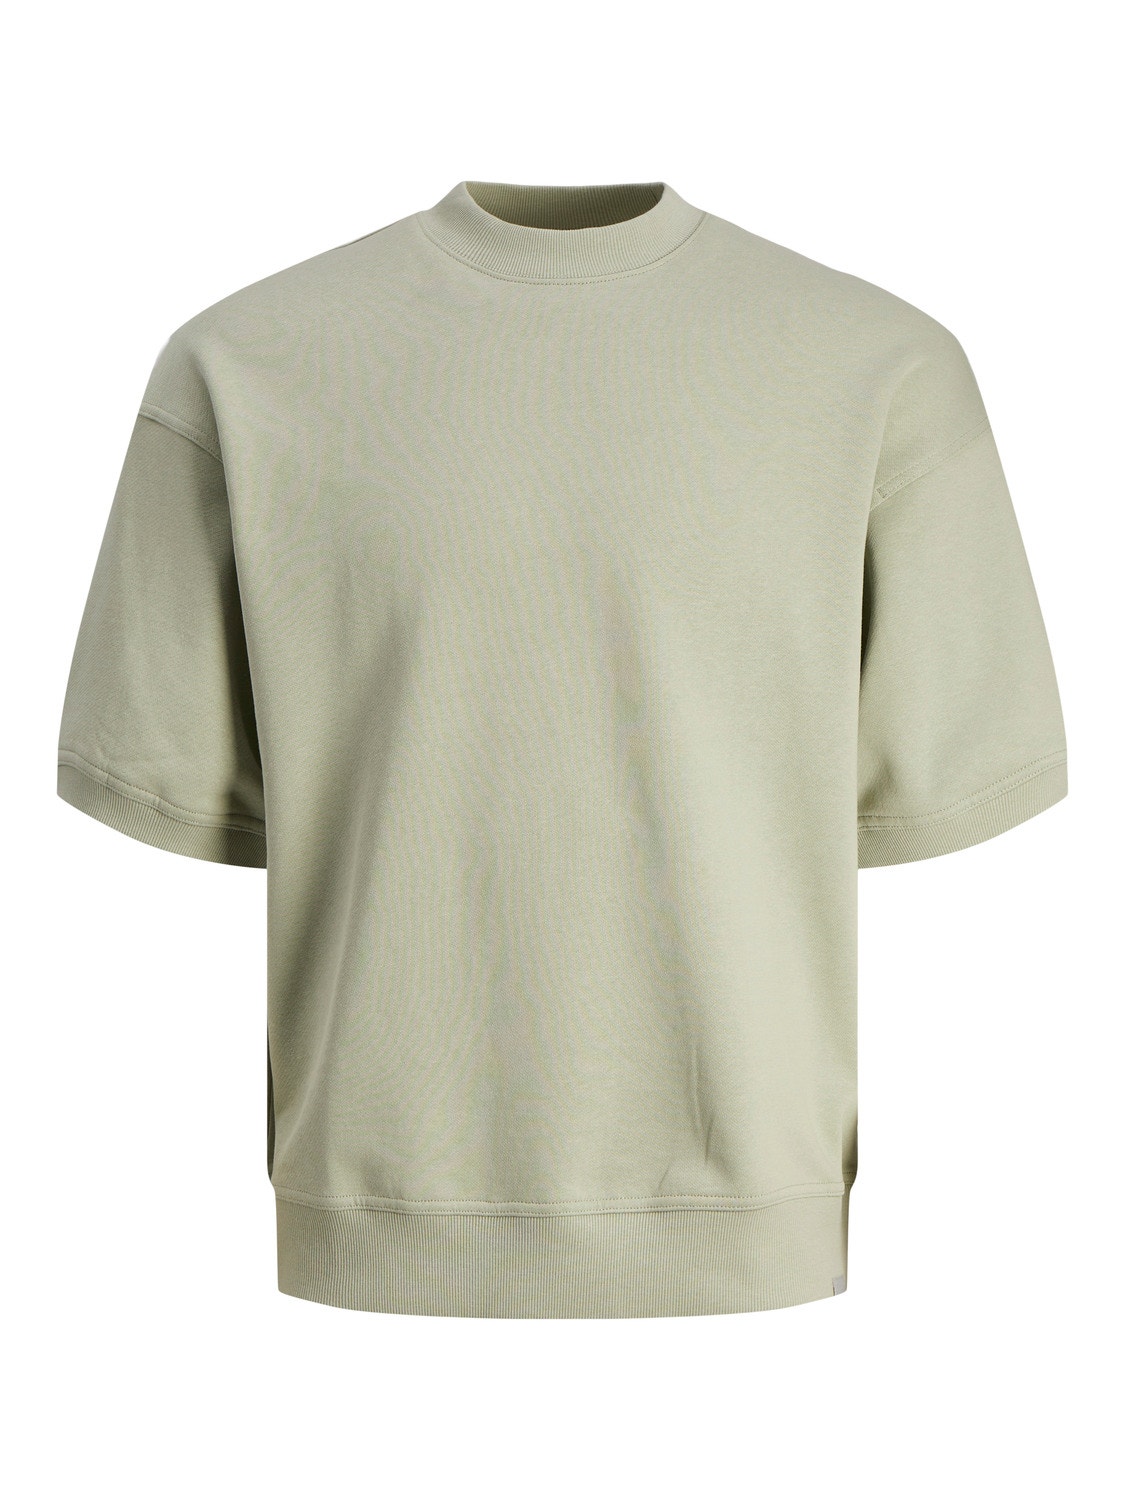 Jack & Jones Wide Fit Crew neck Sweatshirt -Desert Sage - 12255219